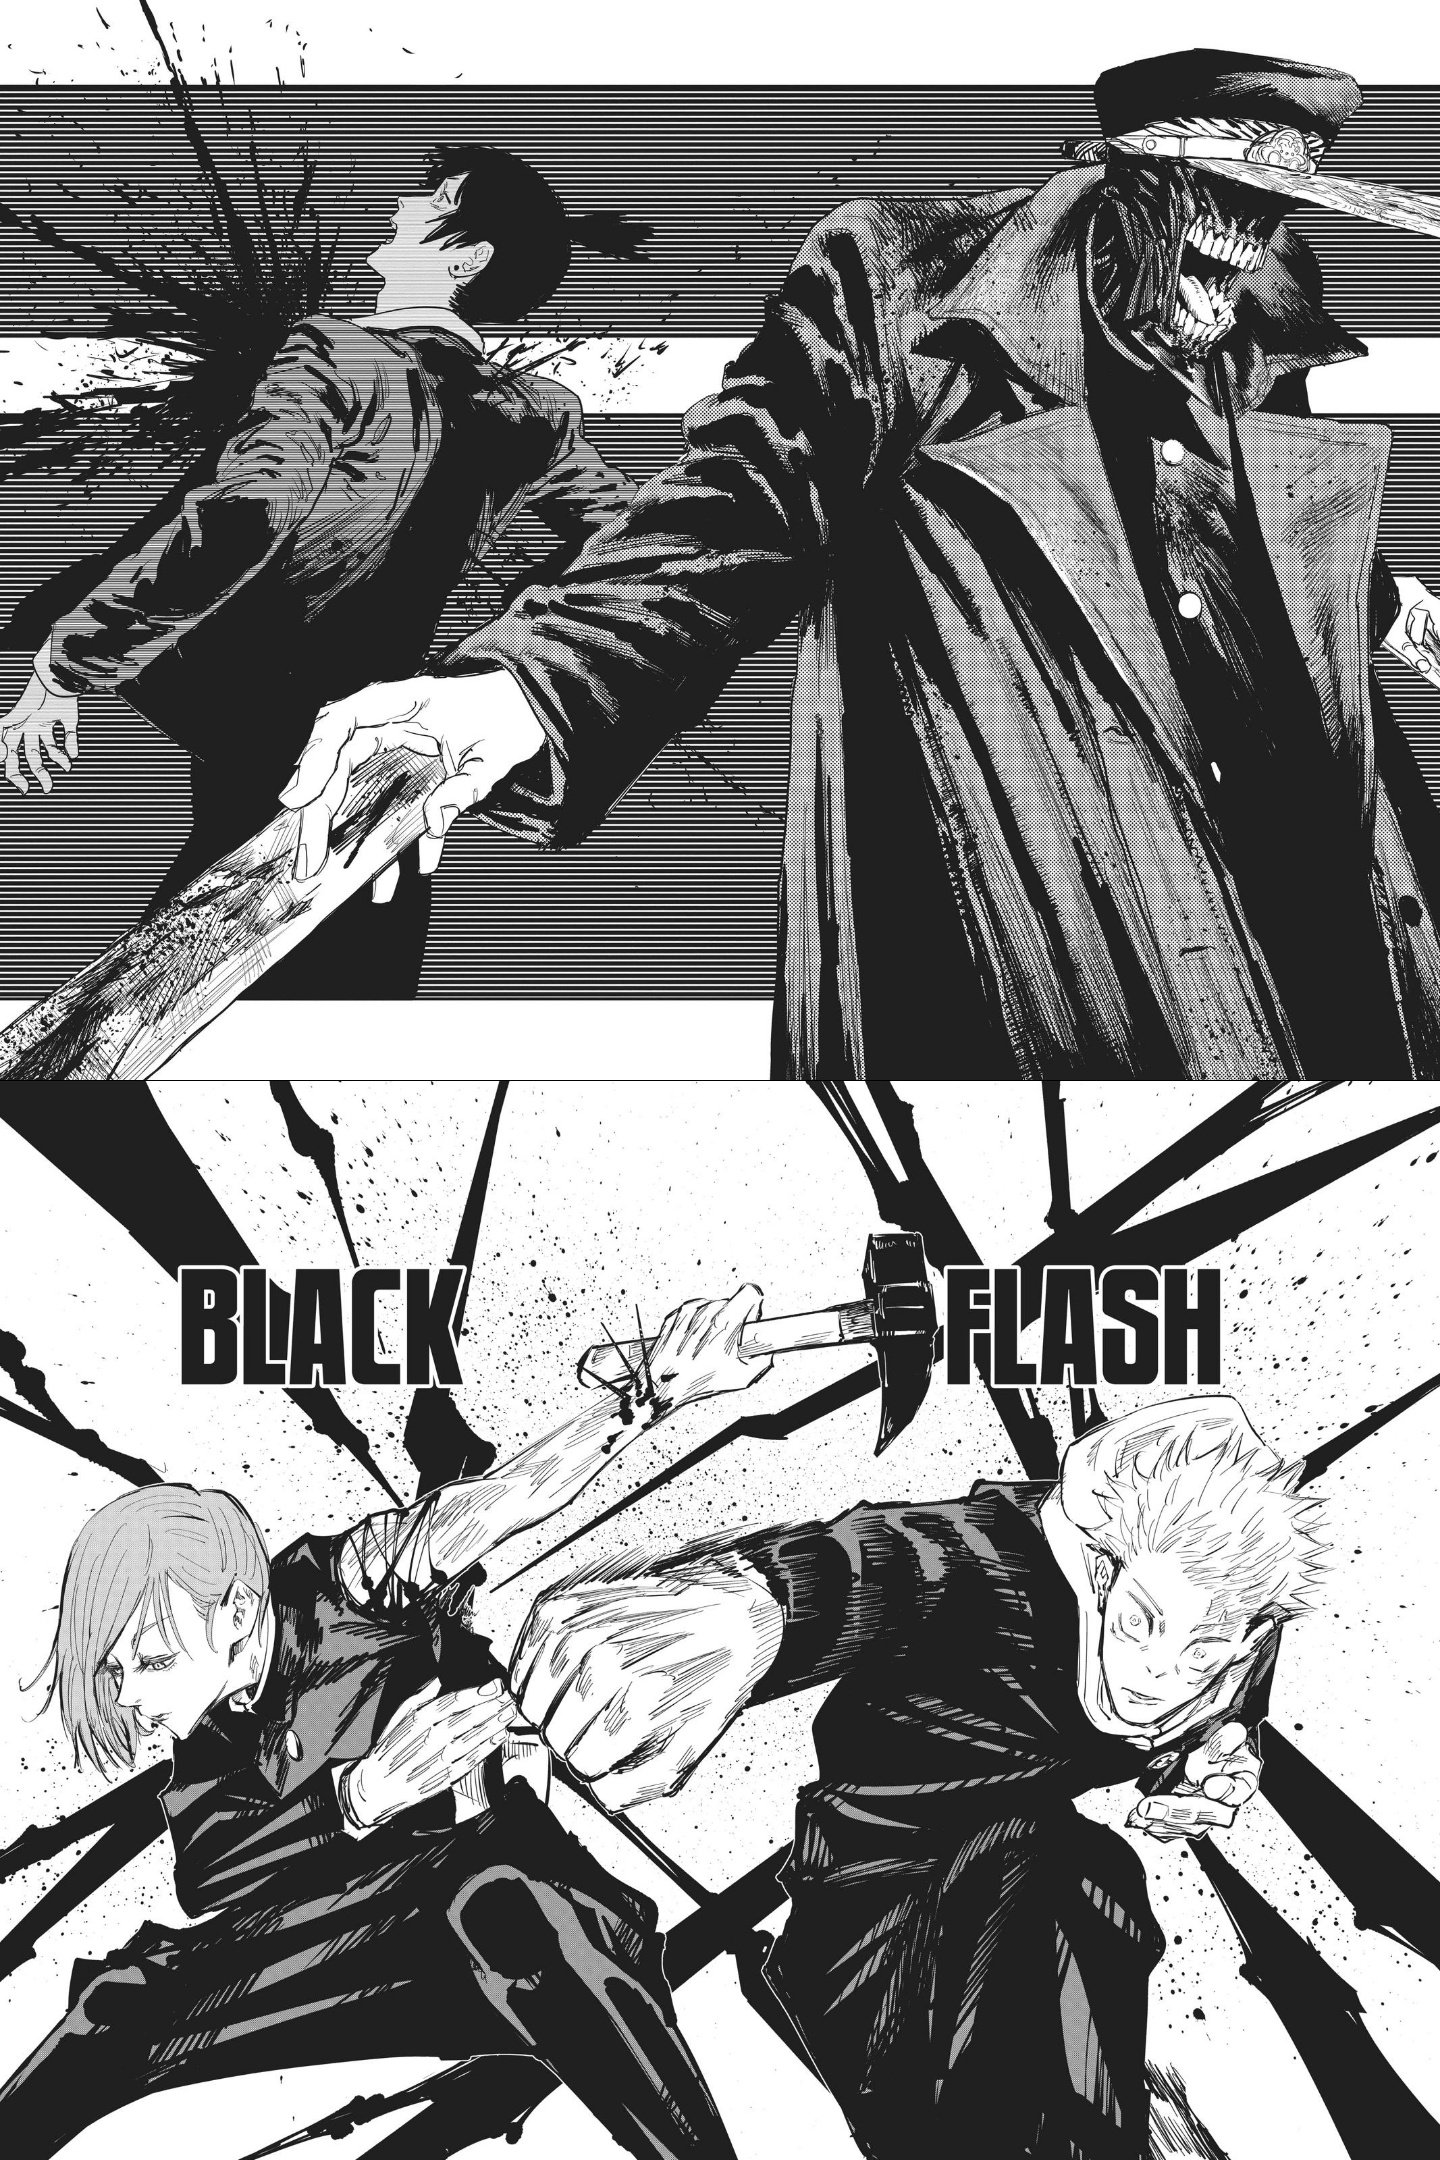 Here's how Jujutsu Kaisen manga surpasses Chainsaw Man in